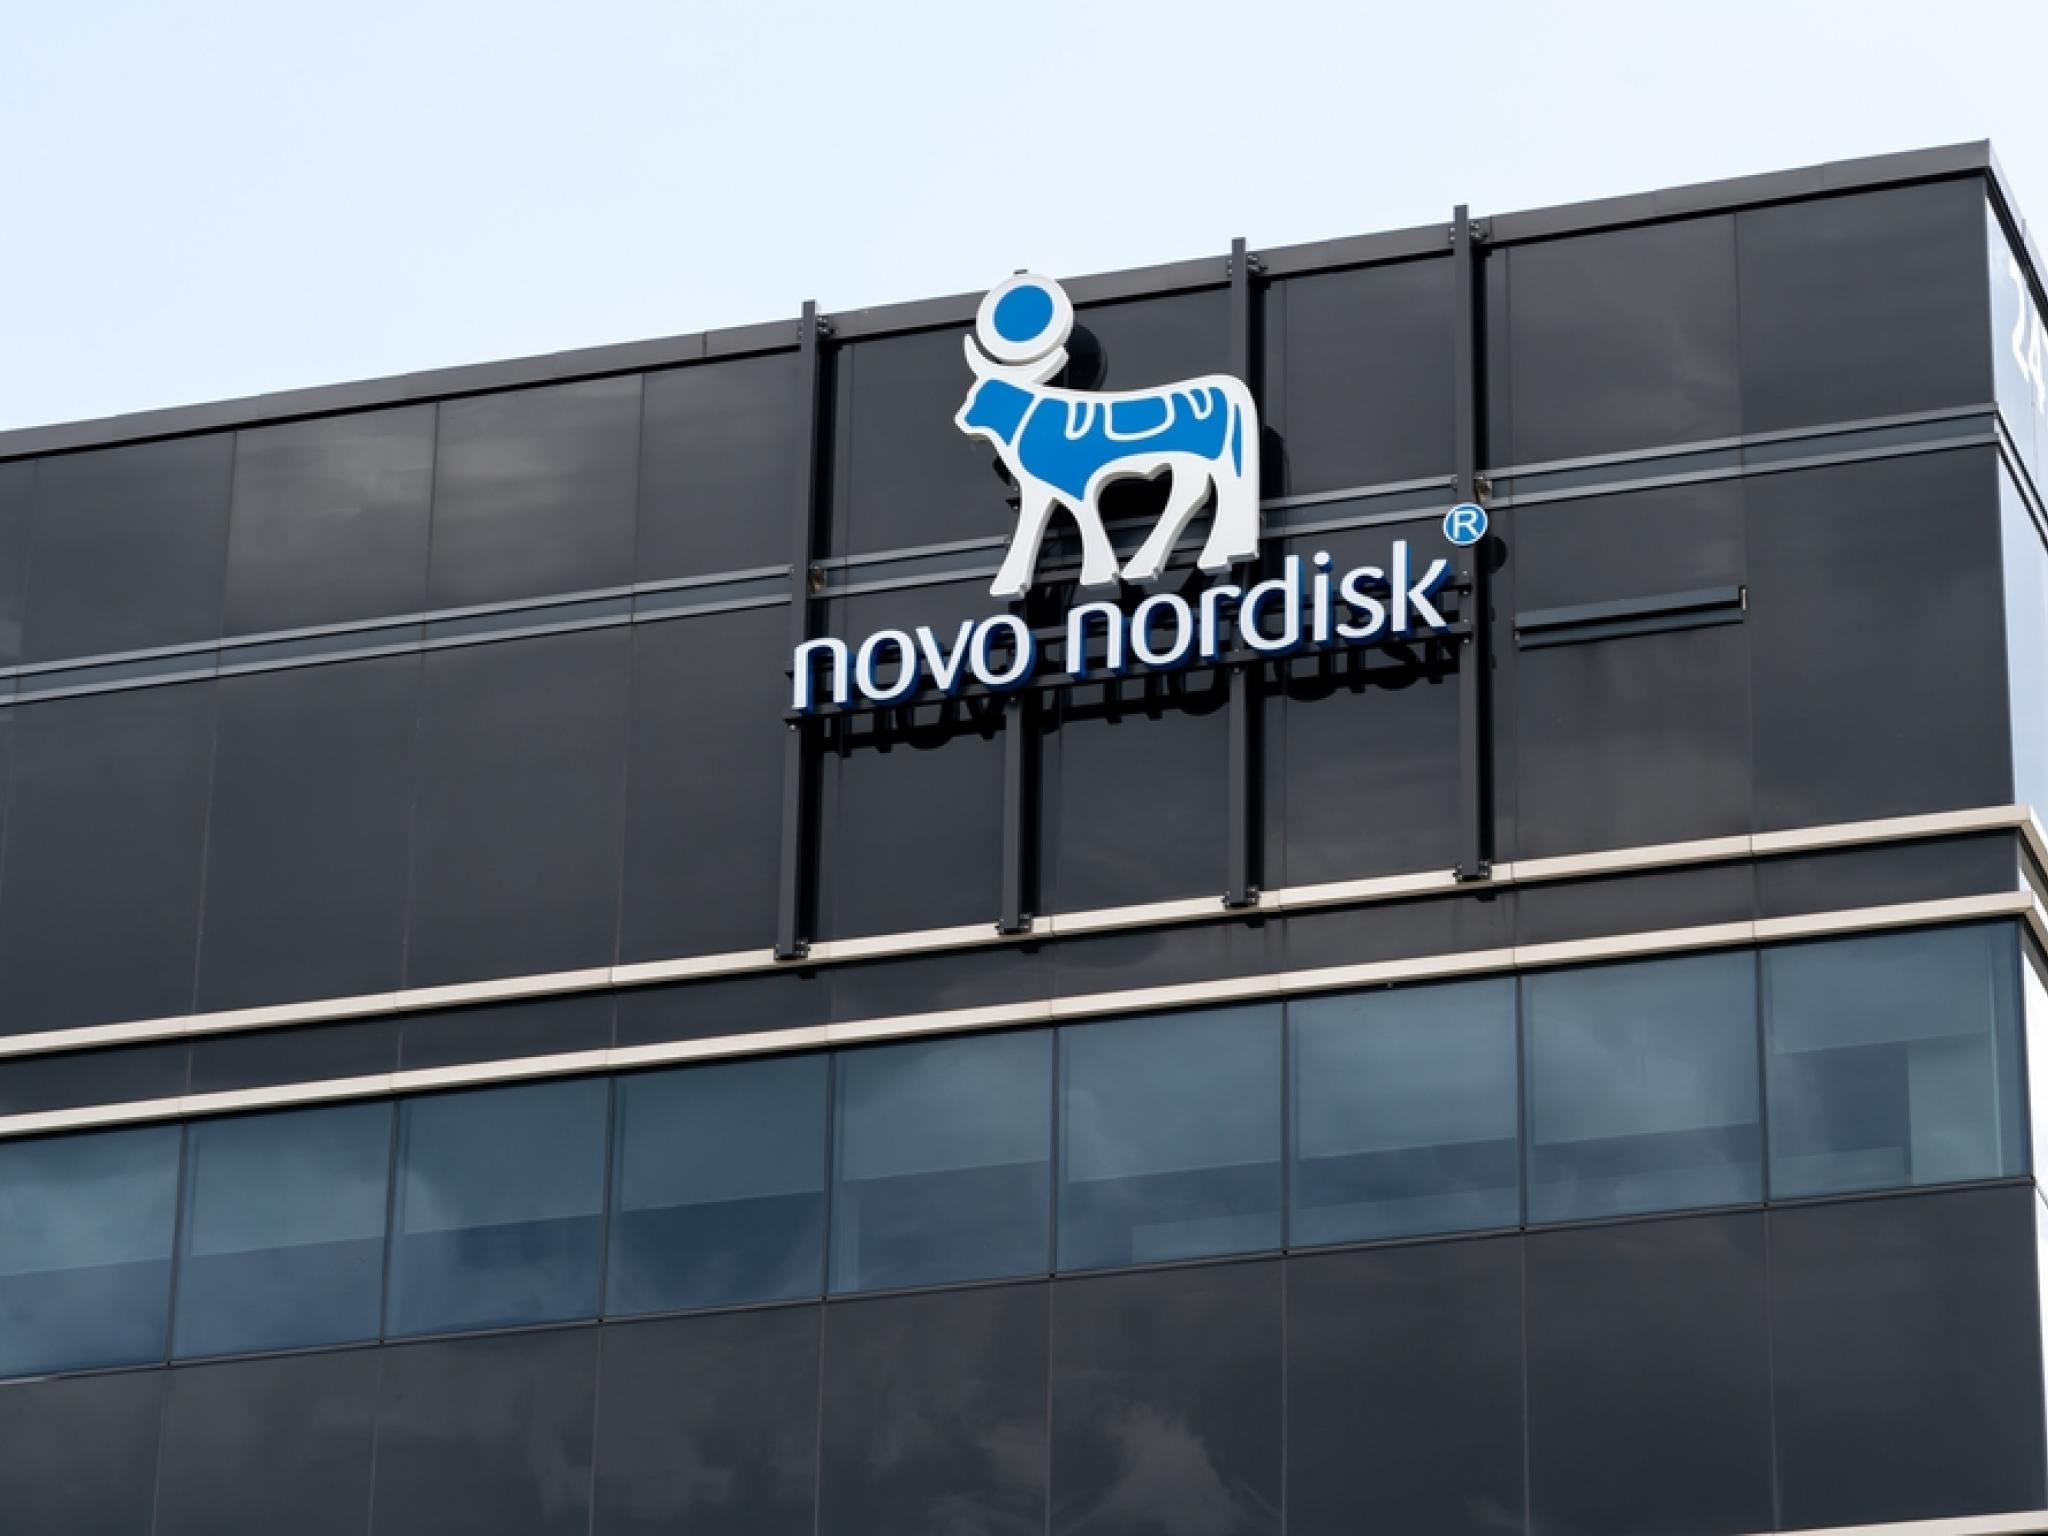  novo-nordisk-sets-timeframe-for-its-next-gen-experimental-obesity-drug 